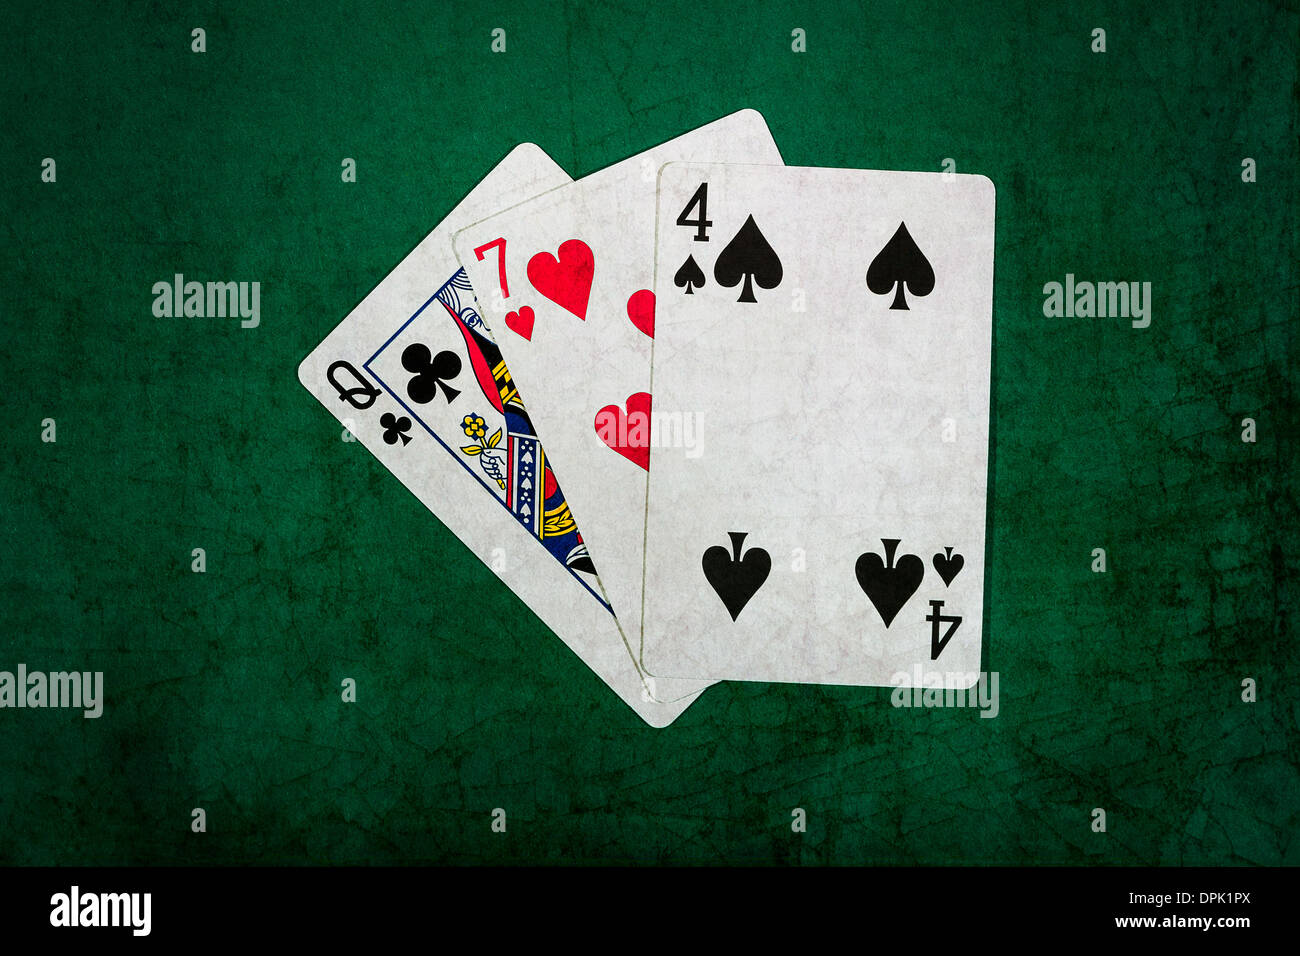 Vingt et un 7. Vue rapprochée des cartes formant la combinaison de blackjack vingt et un points. Banque D'Images